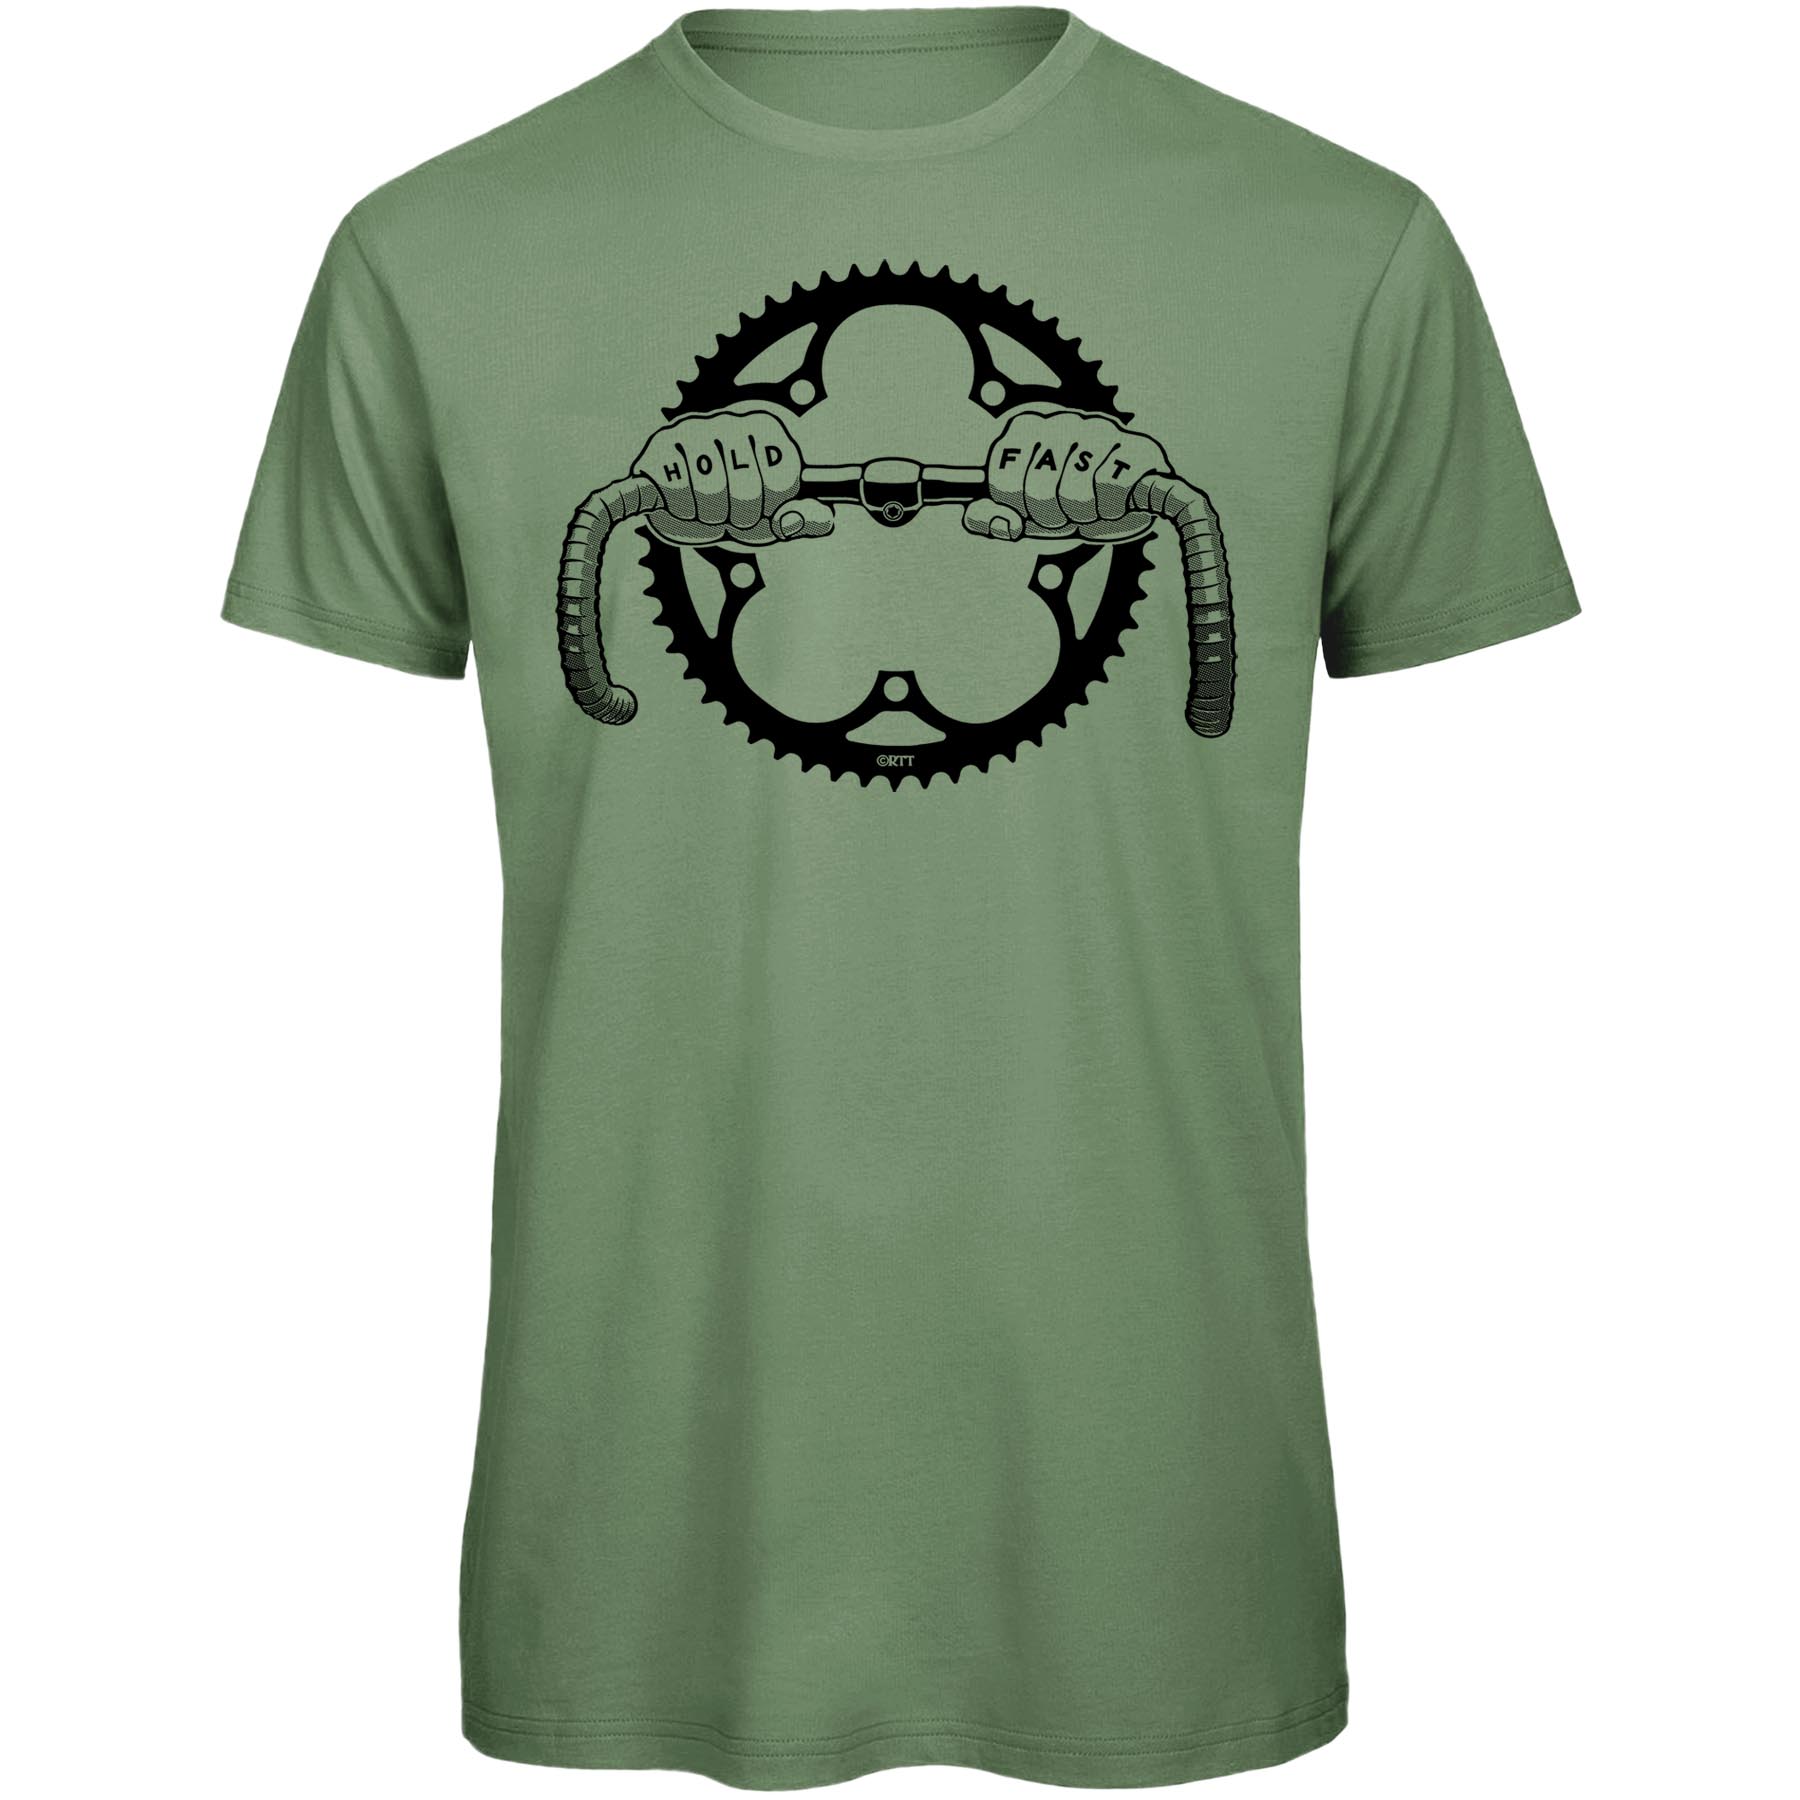 Produktbild von RTTshirts Hold Fast Fahrrad T-Shirt Herren - hellgrün